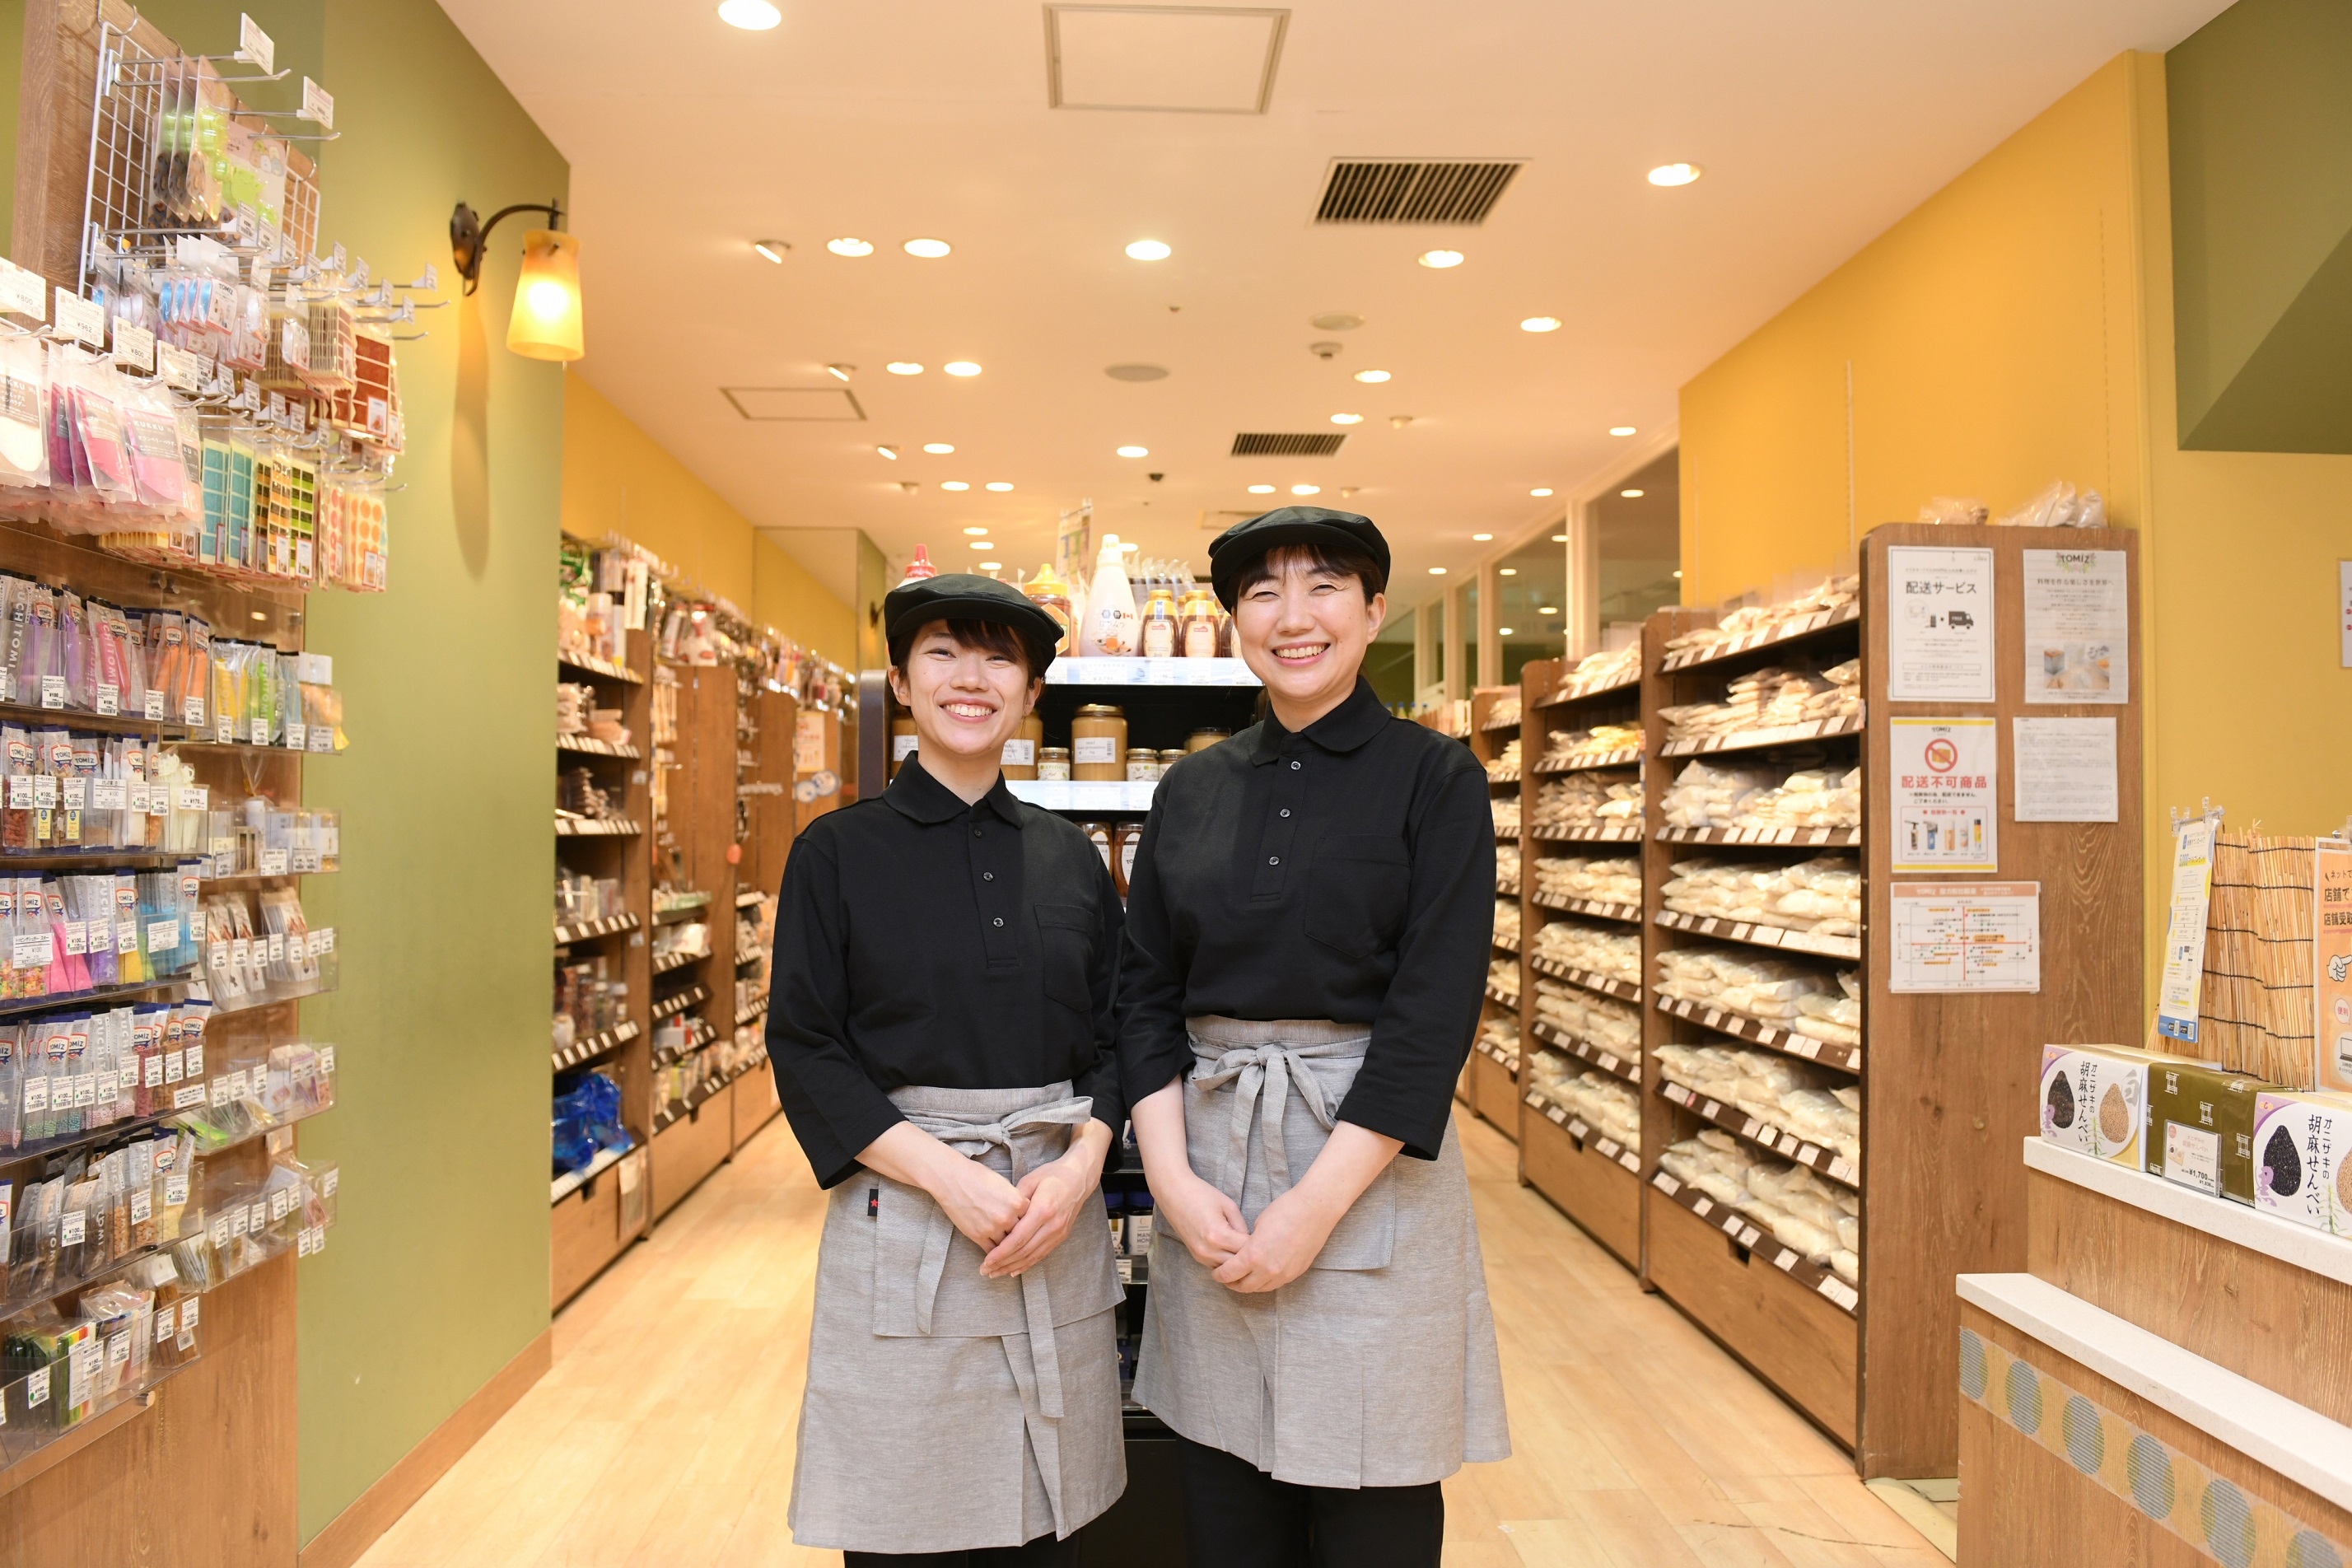 製菓・製パンのための食材や器具などを手がける富澤商店。創業104年を迎える老舗企業だ。